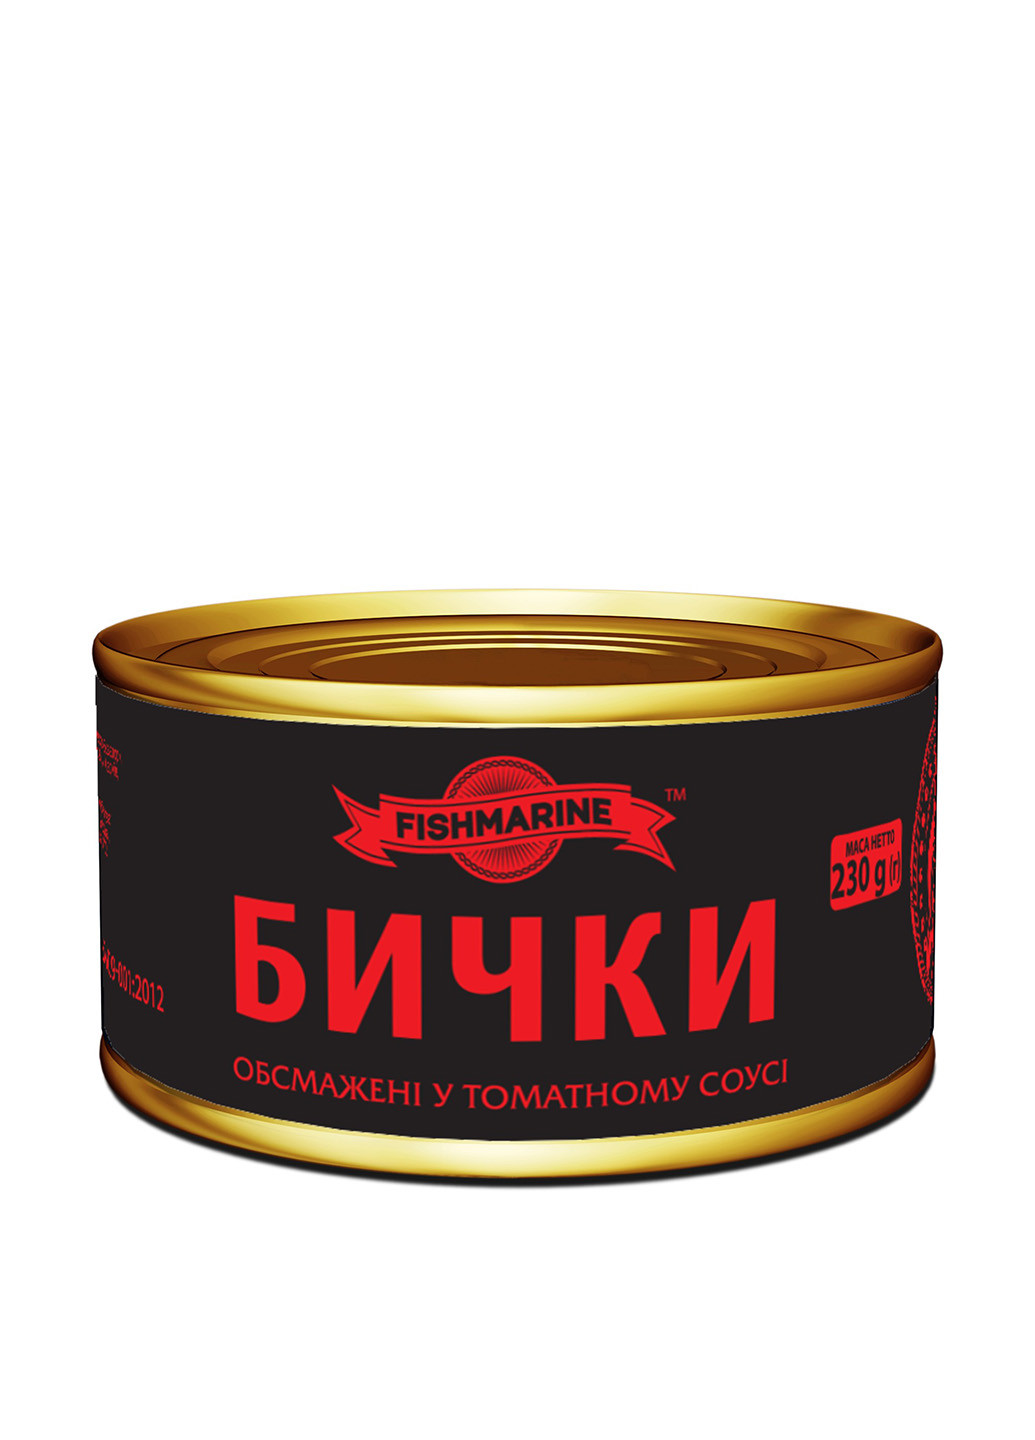 Бычки обжаренные в томатном соусе №5, 230 г Fishmarine (94993107)